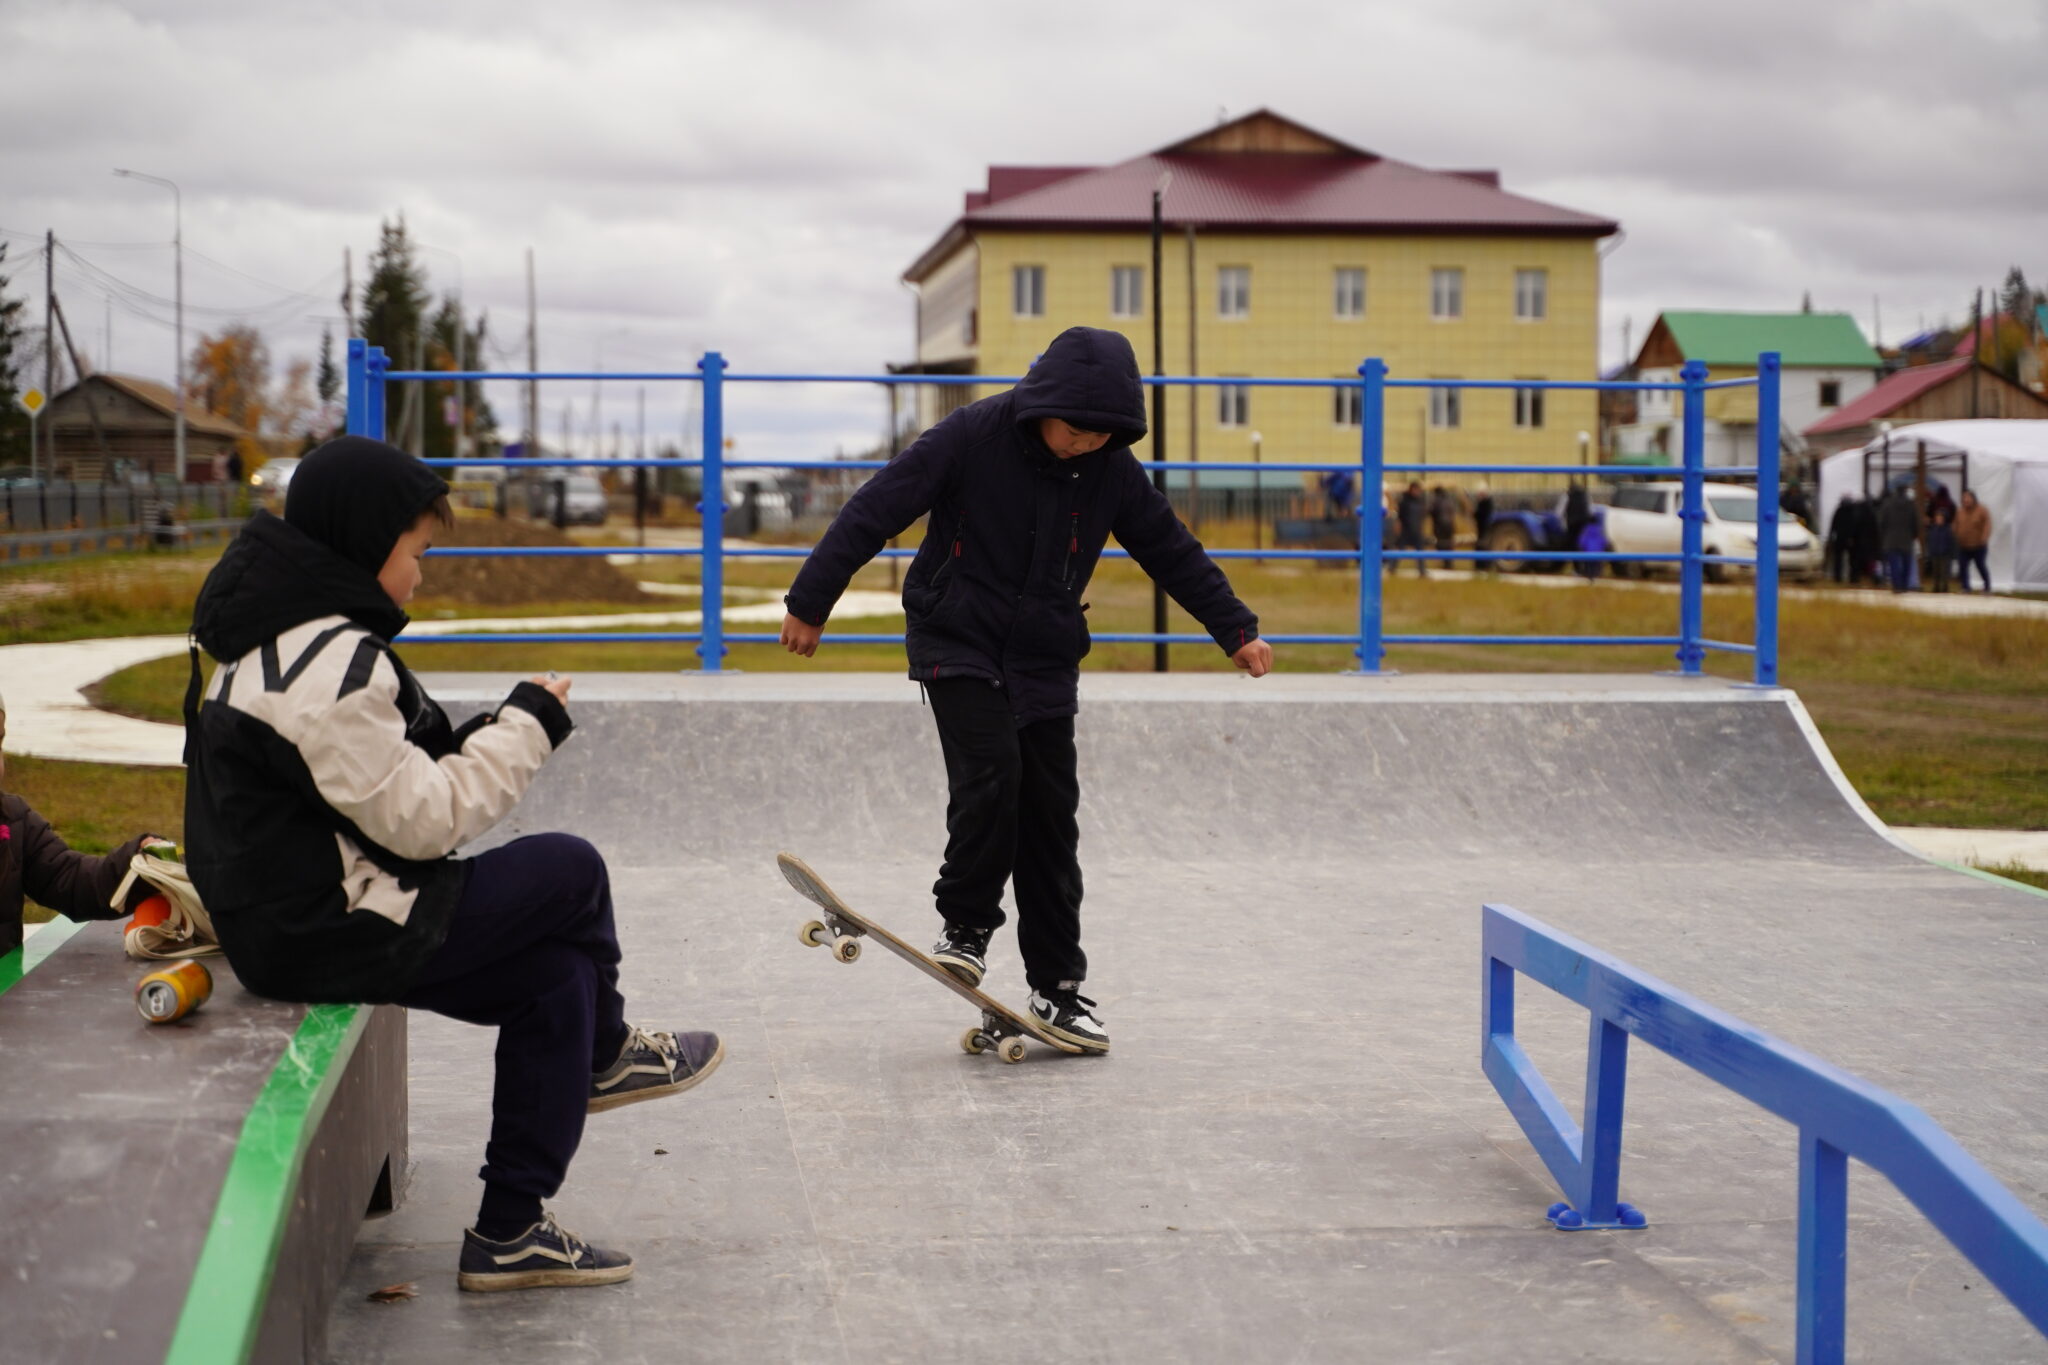 Мини-парк со скейт-площадкой появился в селе Булгунняхтах в Якутии